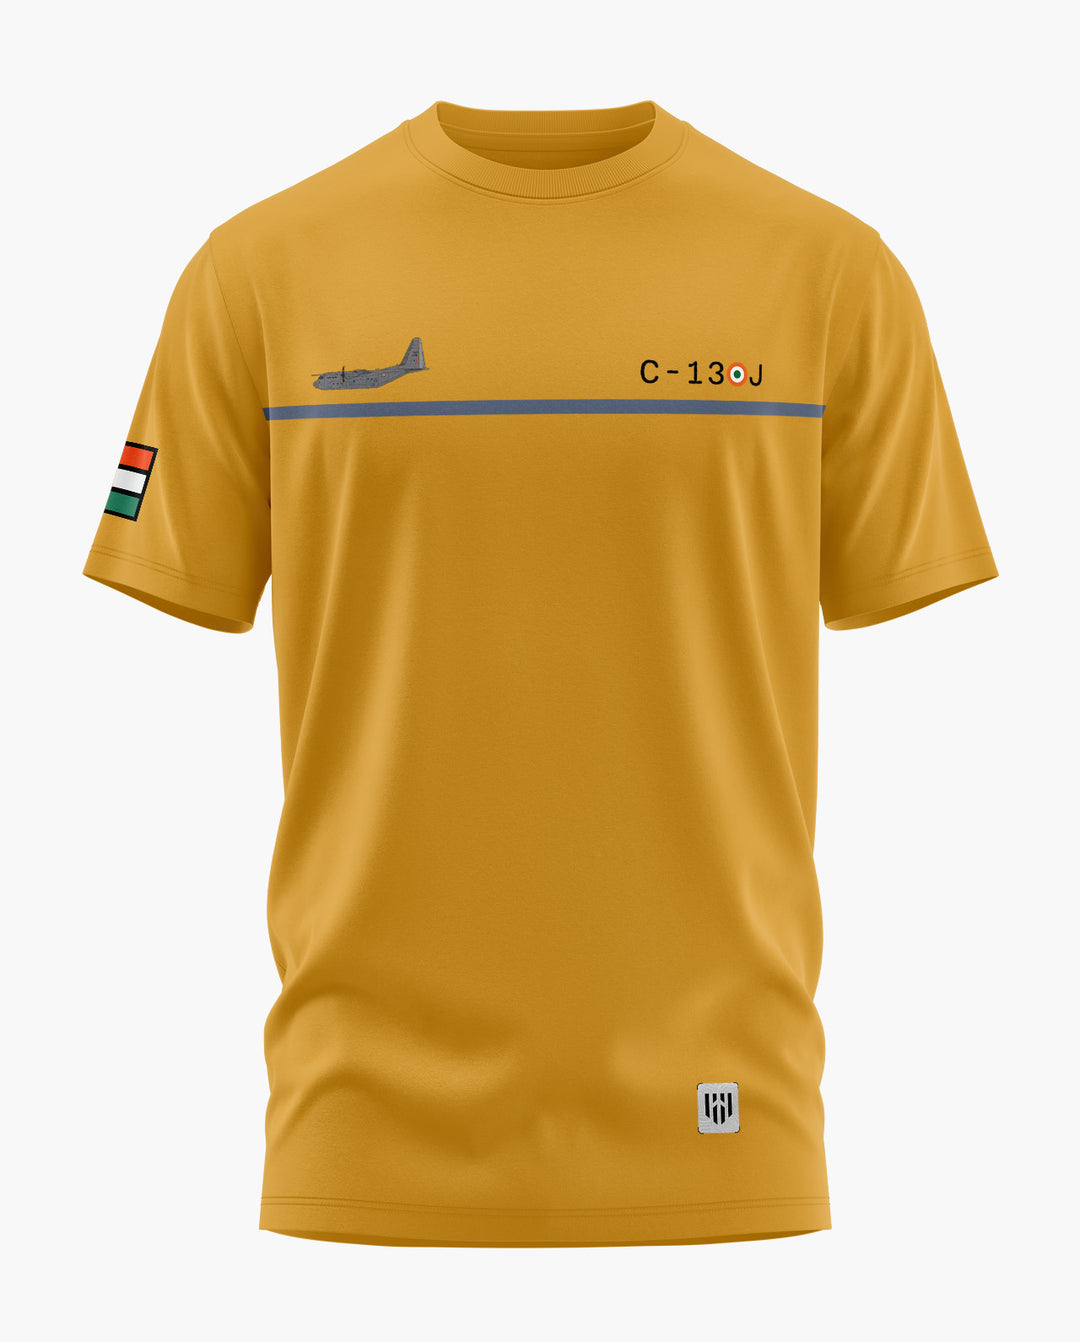 C130J SUPER HERCULES T-Shirt